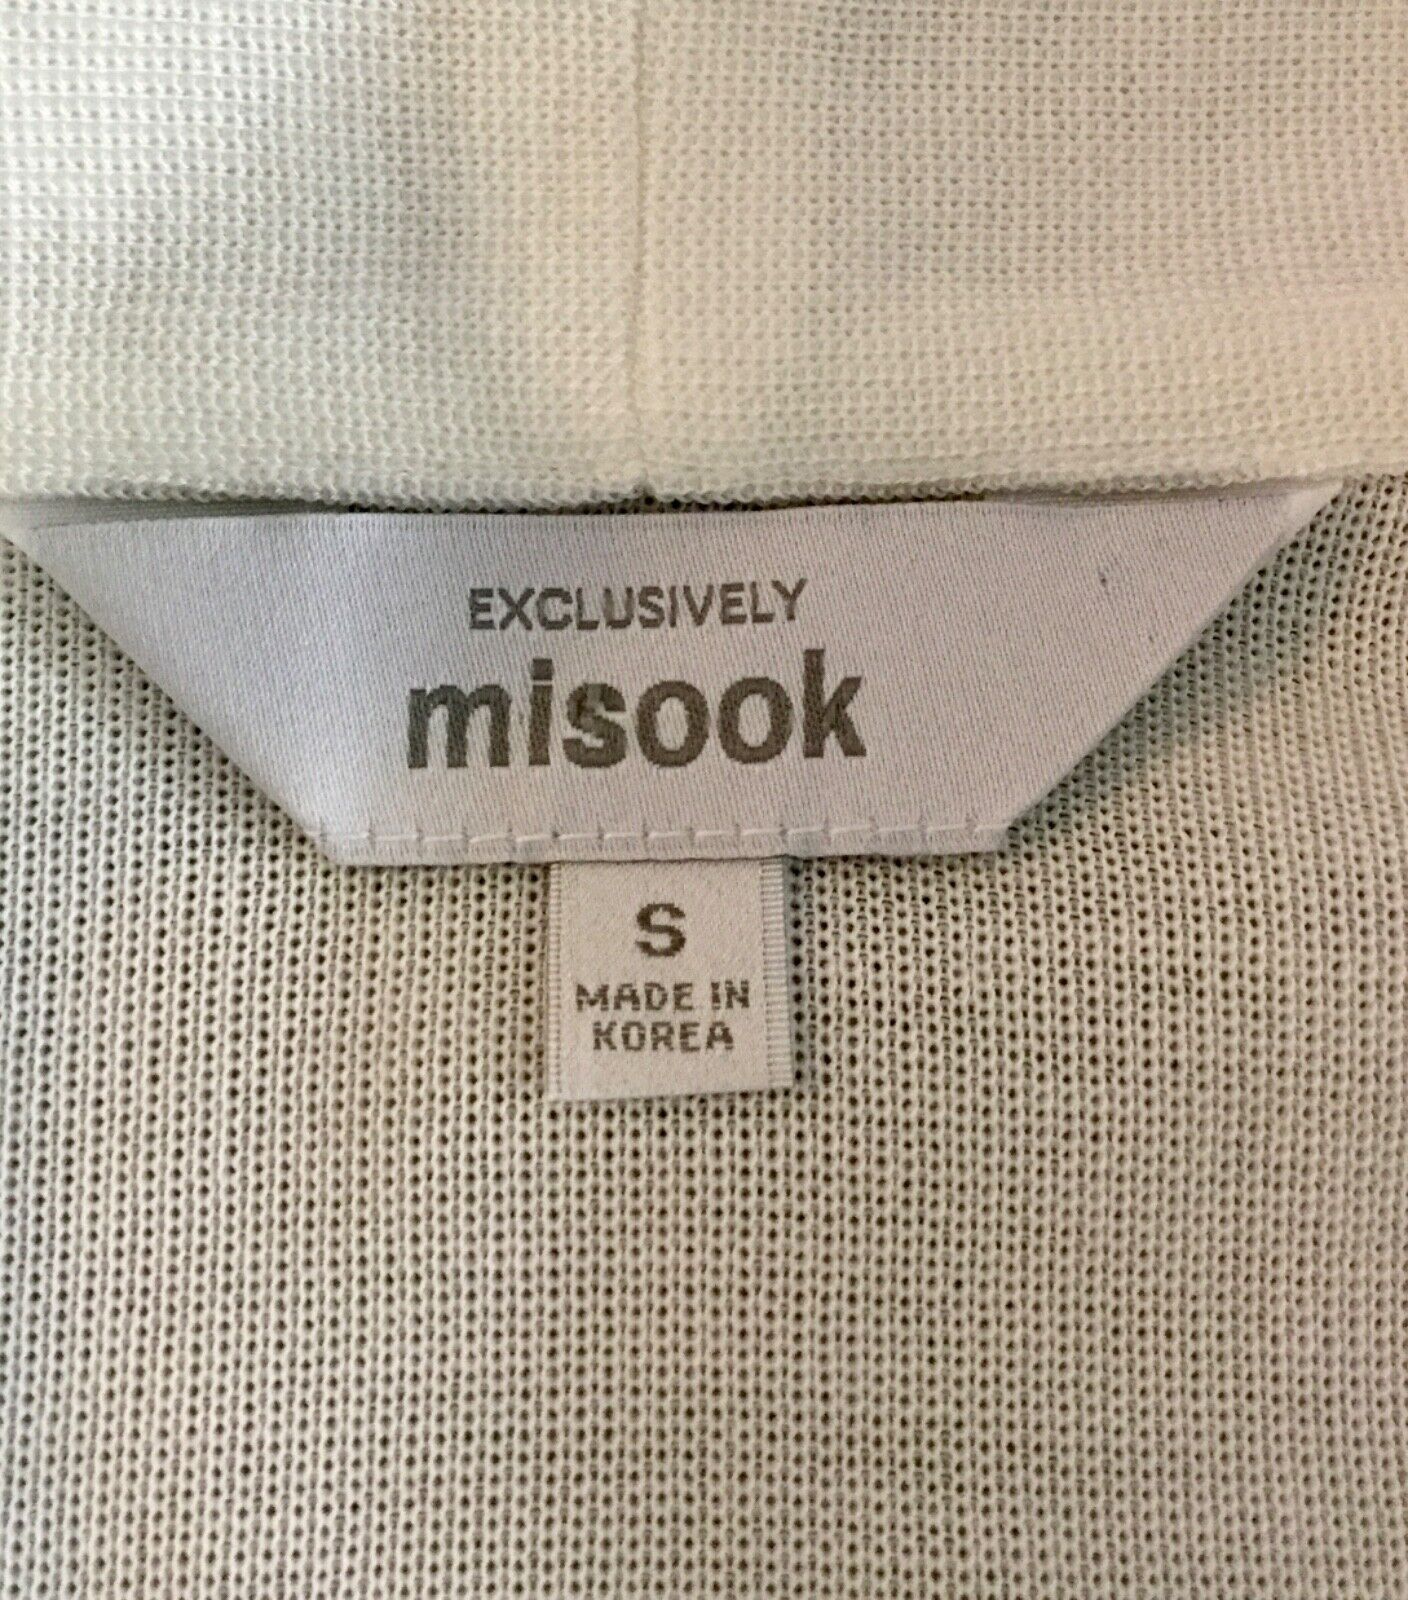 Misook Jacket White Blue and Black size S - image 4